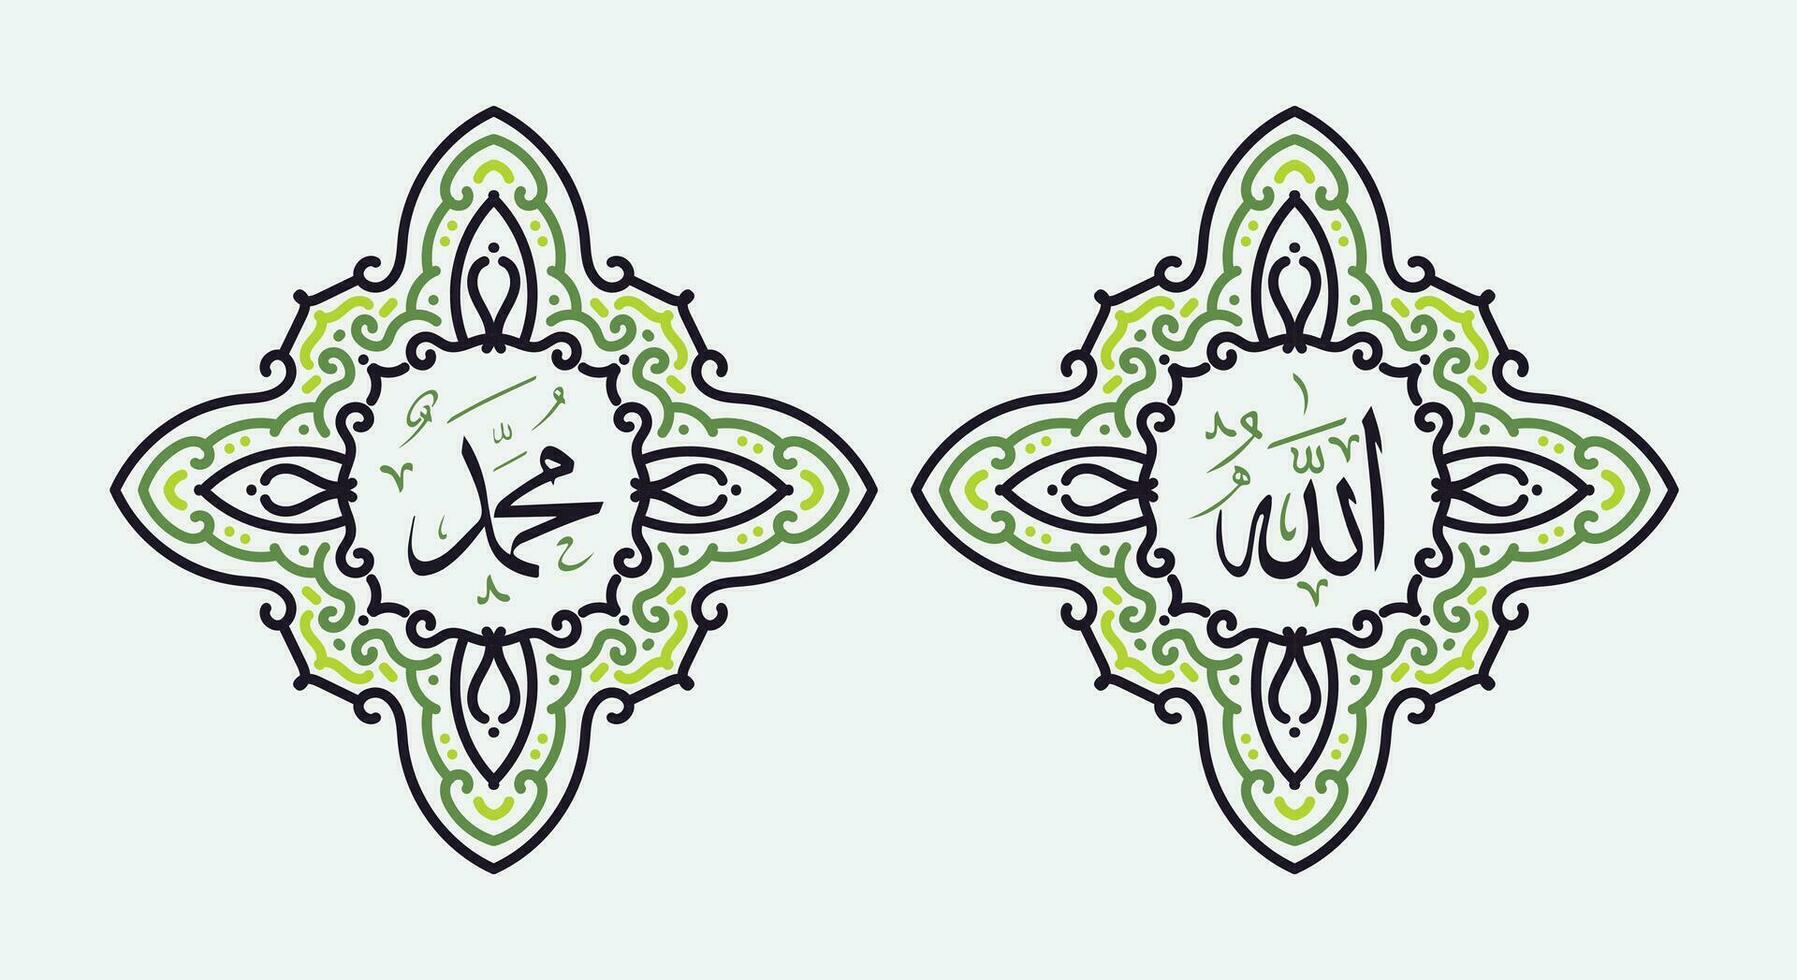 Översätt detta text från arabicum språk till i engelsk är muhammed, allah. så den betyder Gud i muslim. uppsättning två av islamic vägg konst. allah och muhammad vägg dekor. minimalistisk muslim tapet. vektor